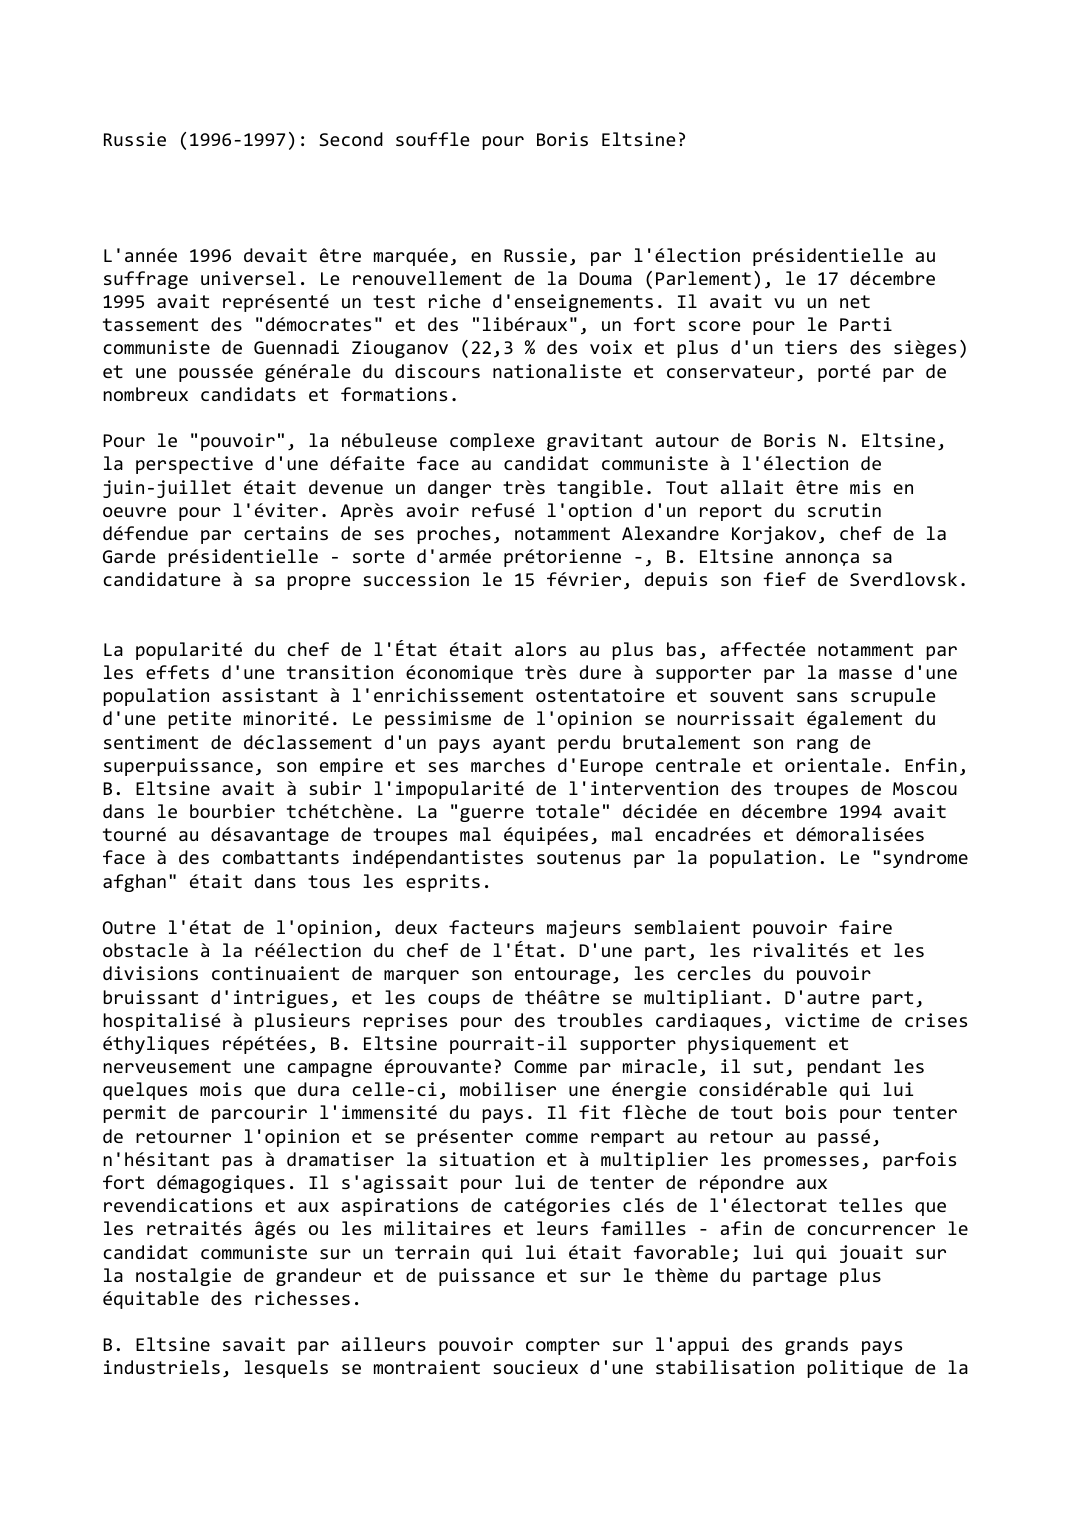 Prévisualisation du document Russie (1996-1997): Second souffle pour Boris Eltsine?